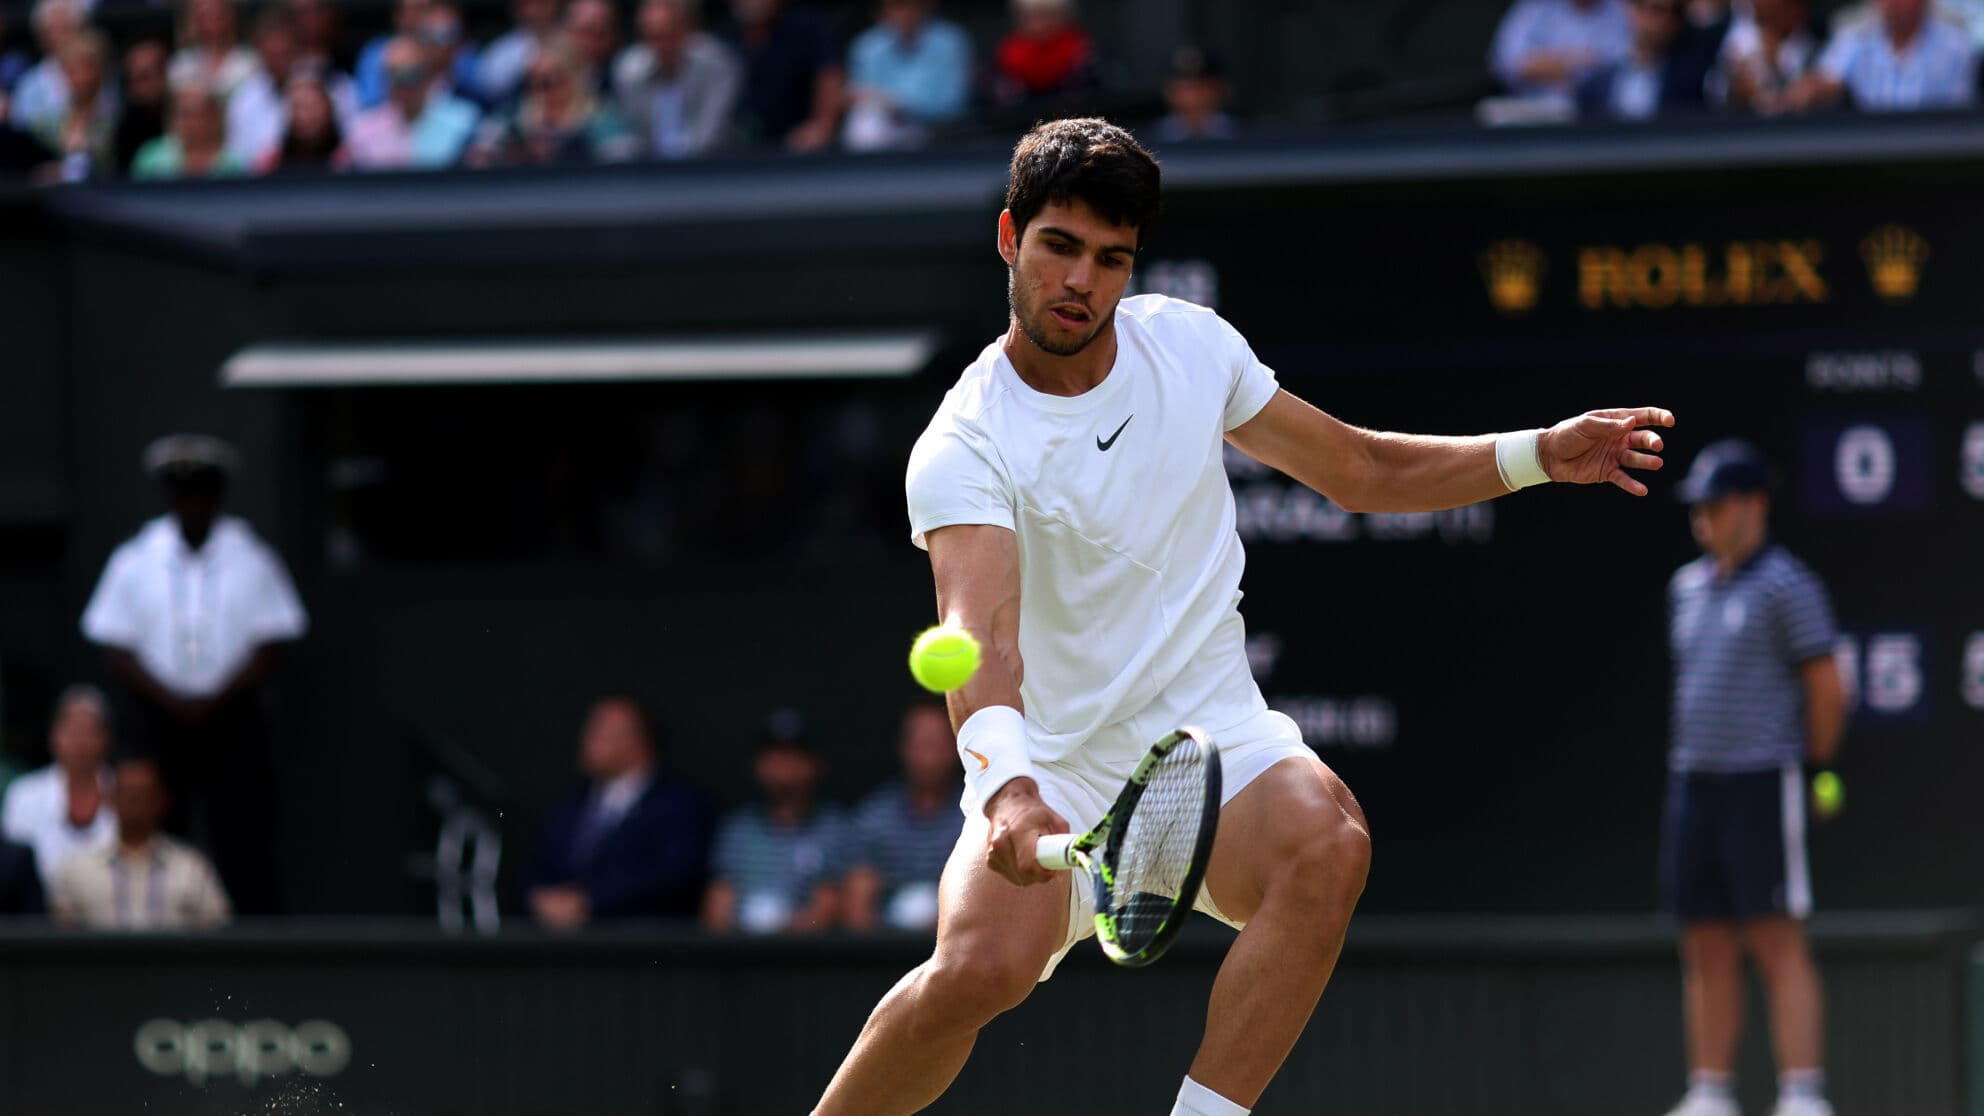 NA ŻYWO – Wimbledon: Alcaraz bierze niewielką opcję, by dołączyć do Djokovica w finale